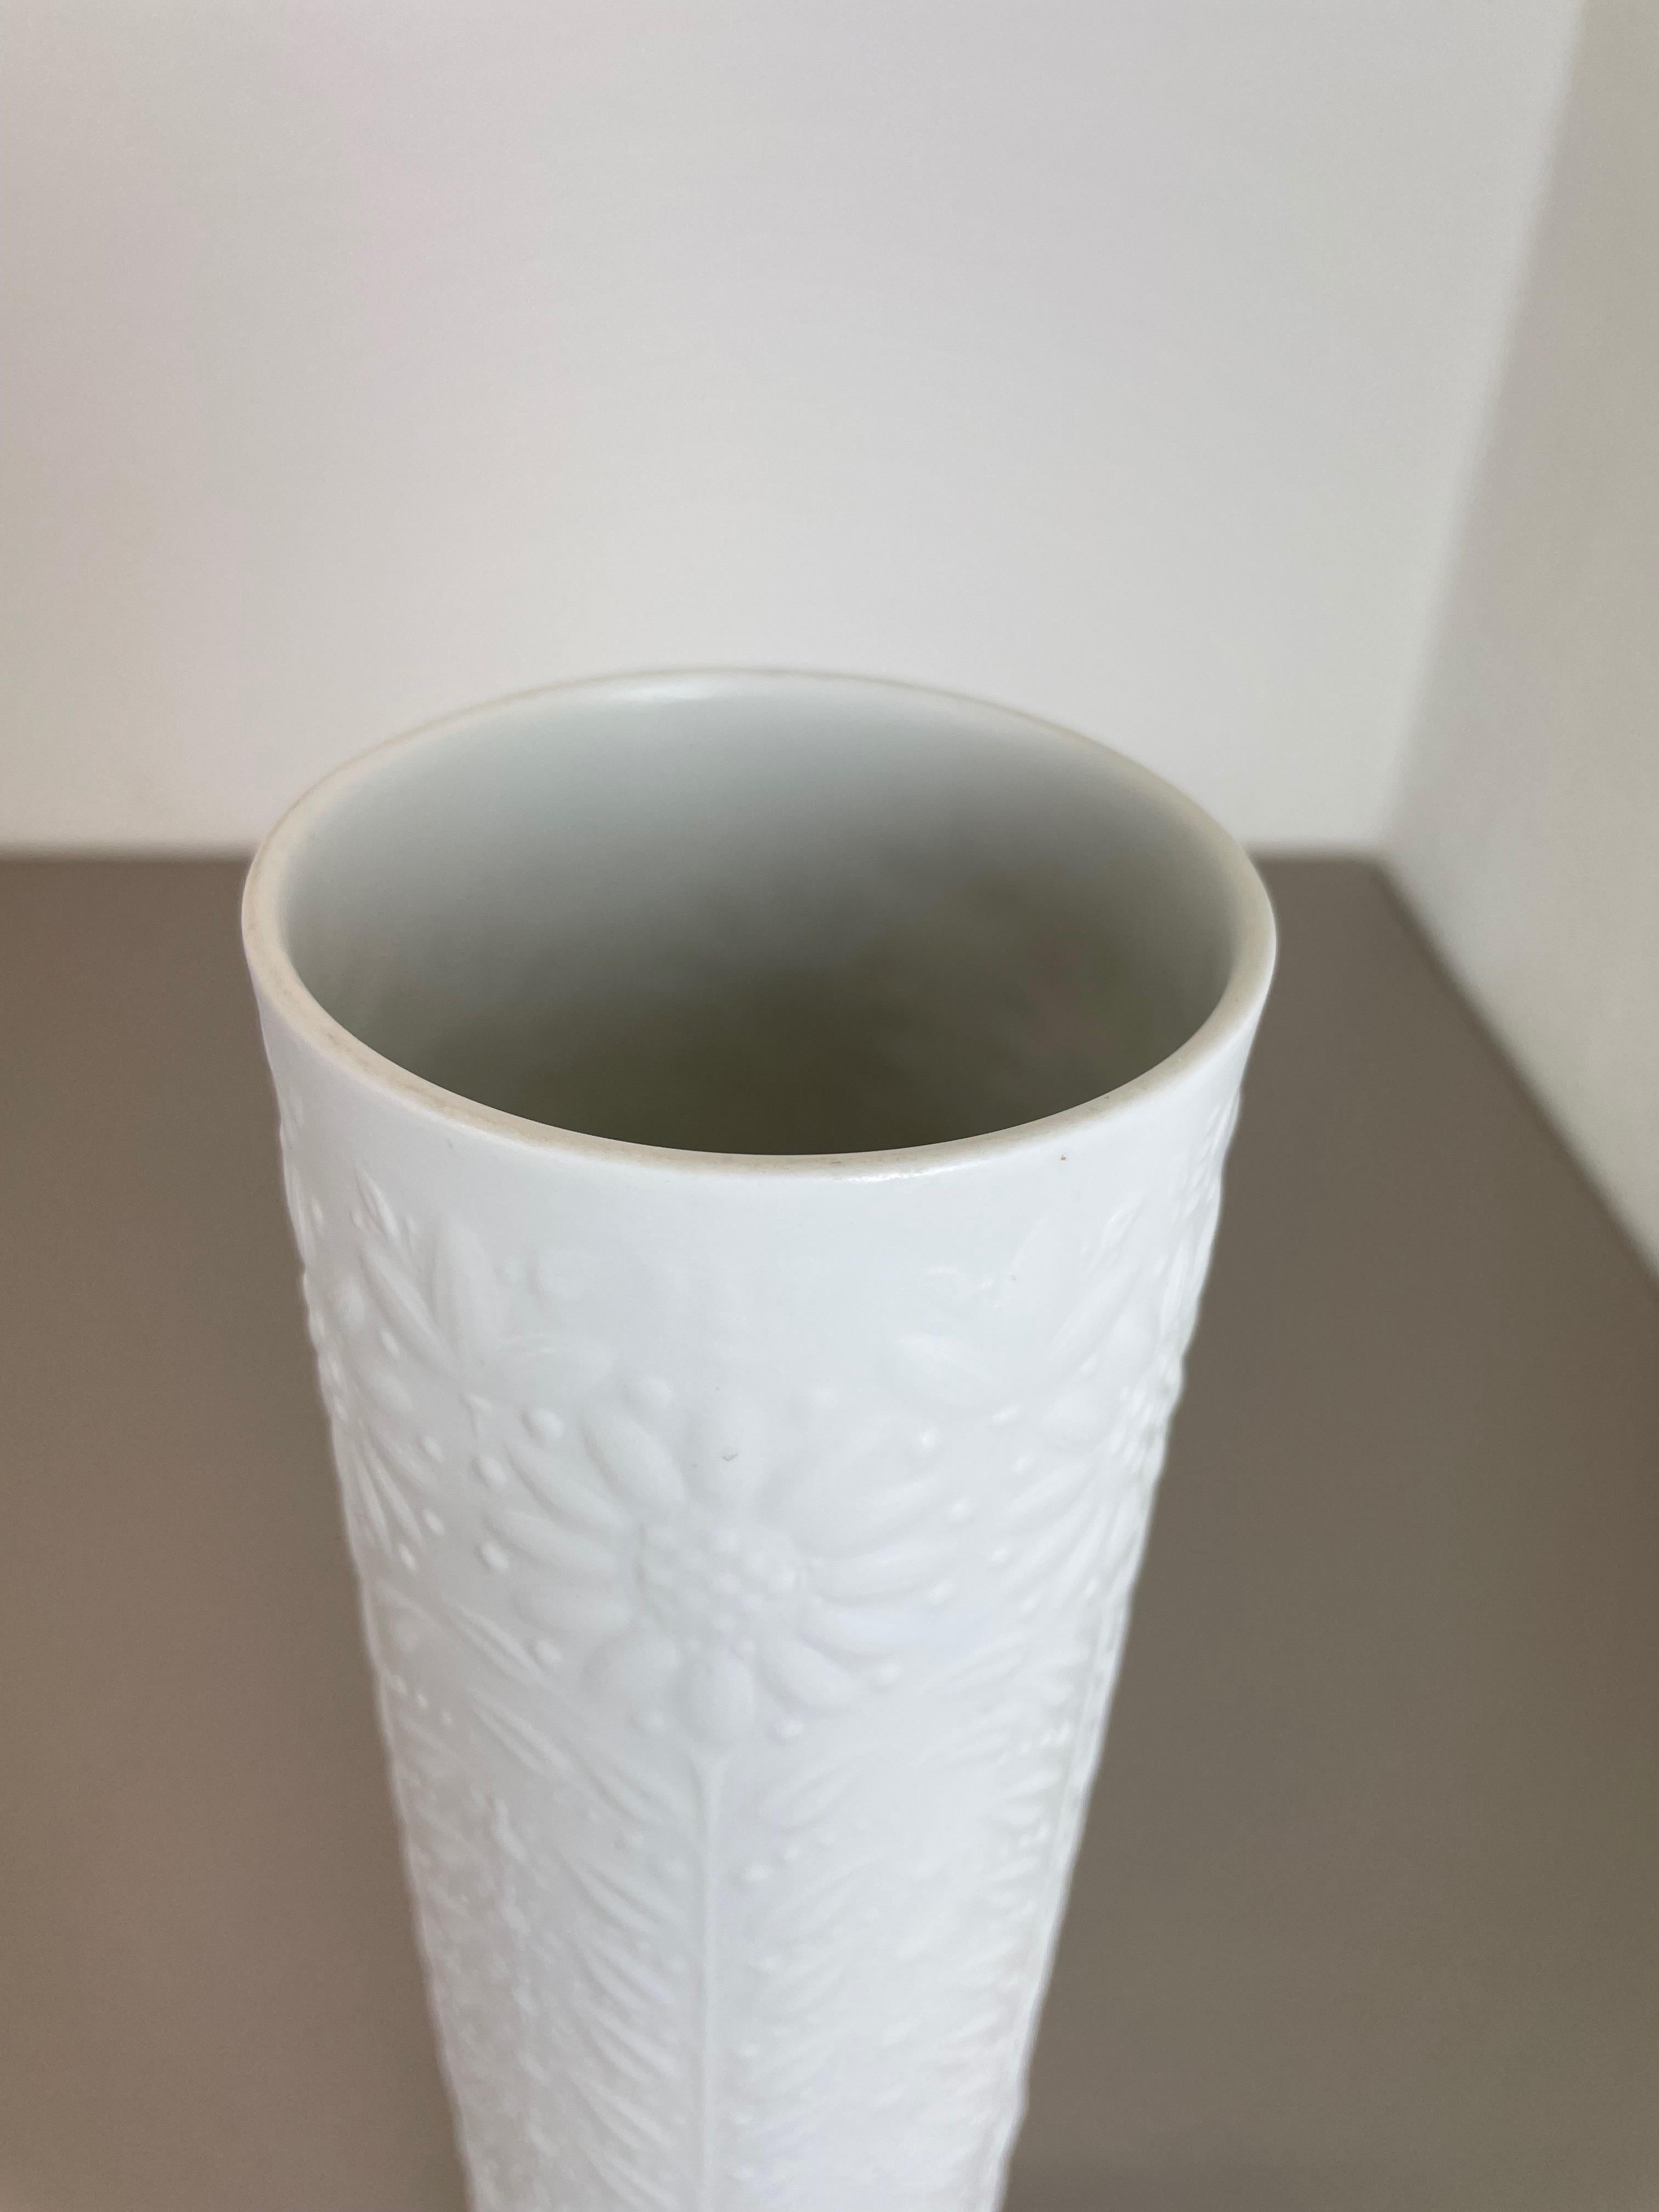 33cm Op Art Vase by Björn Wiinblad for Rosenthal Studio Line Germany, 1970s For Sale 1